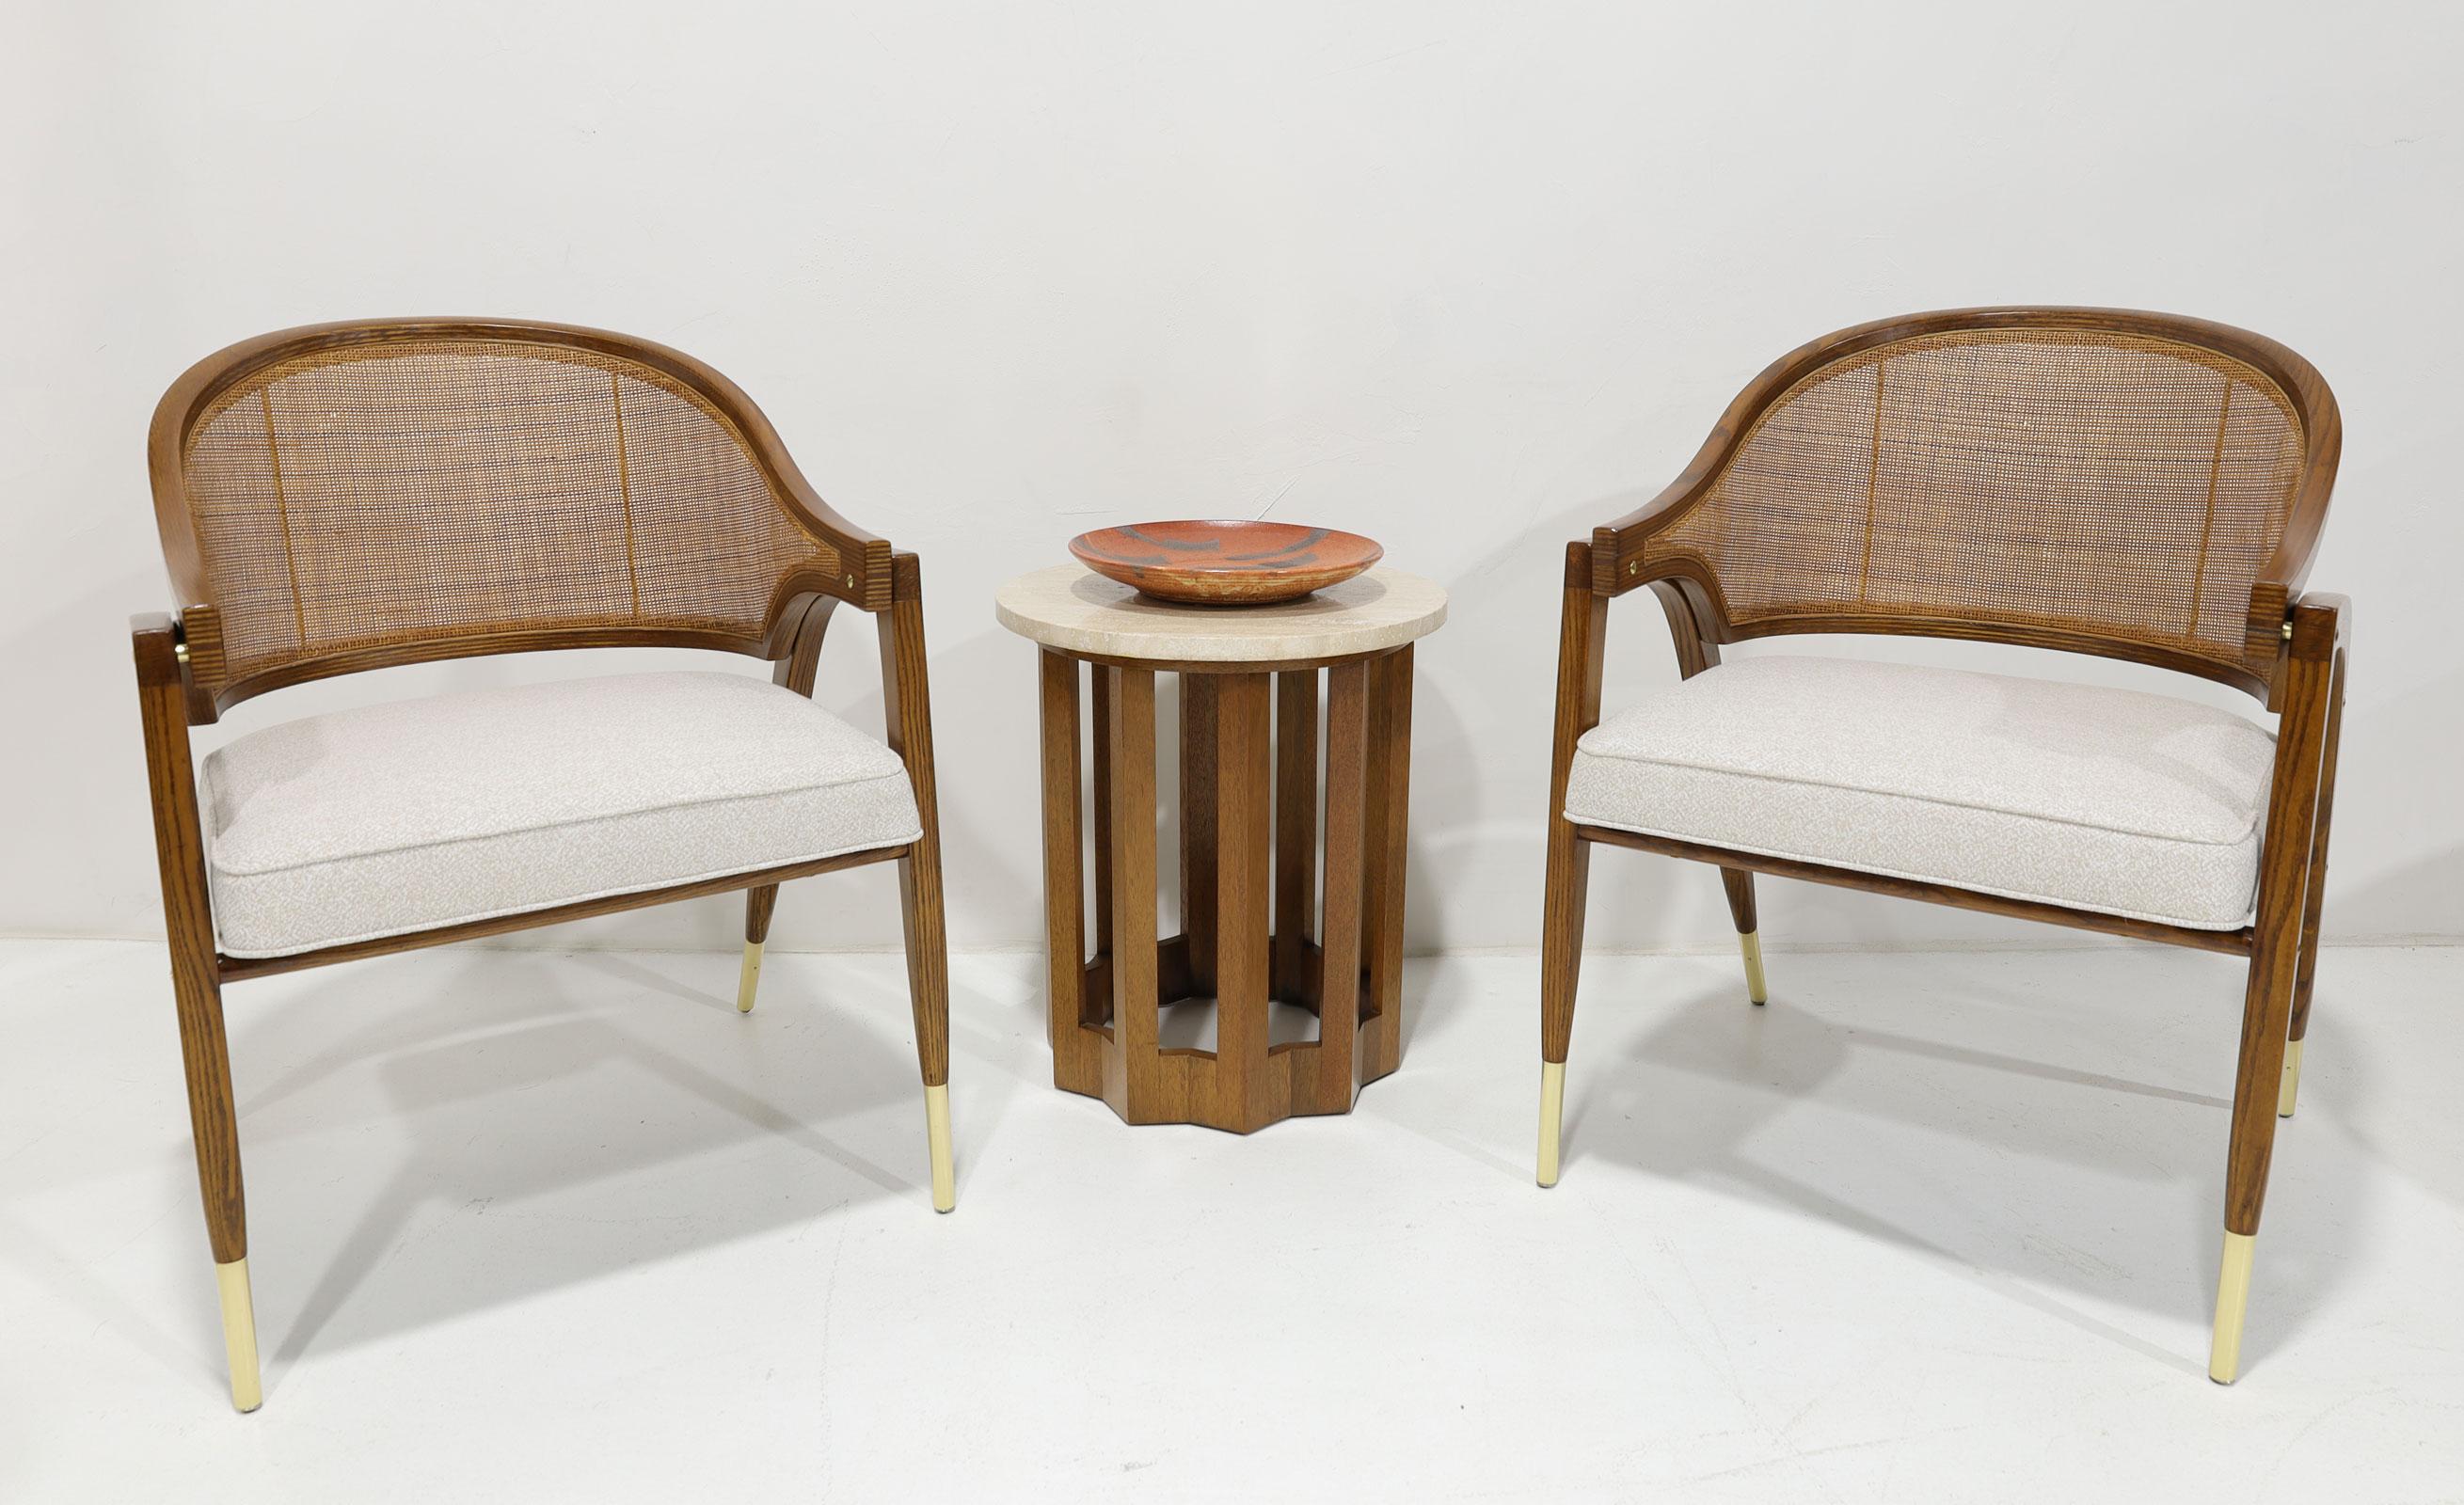 L'une des chaises les plus célèbres et les plus élégantes d'Eleg Wormley.  Un chef-d'œuvre intemporel. La chaise du capitaine. Nous avons entièrement restauré pour mettre en valeur le magnifique laiton poli, le dossier en rotin et le cadre en bois